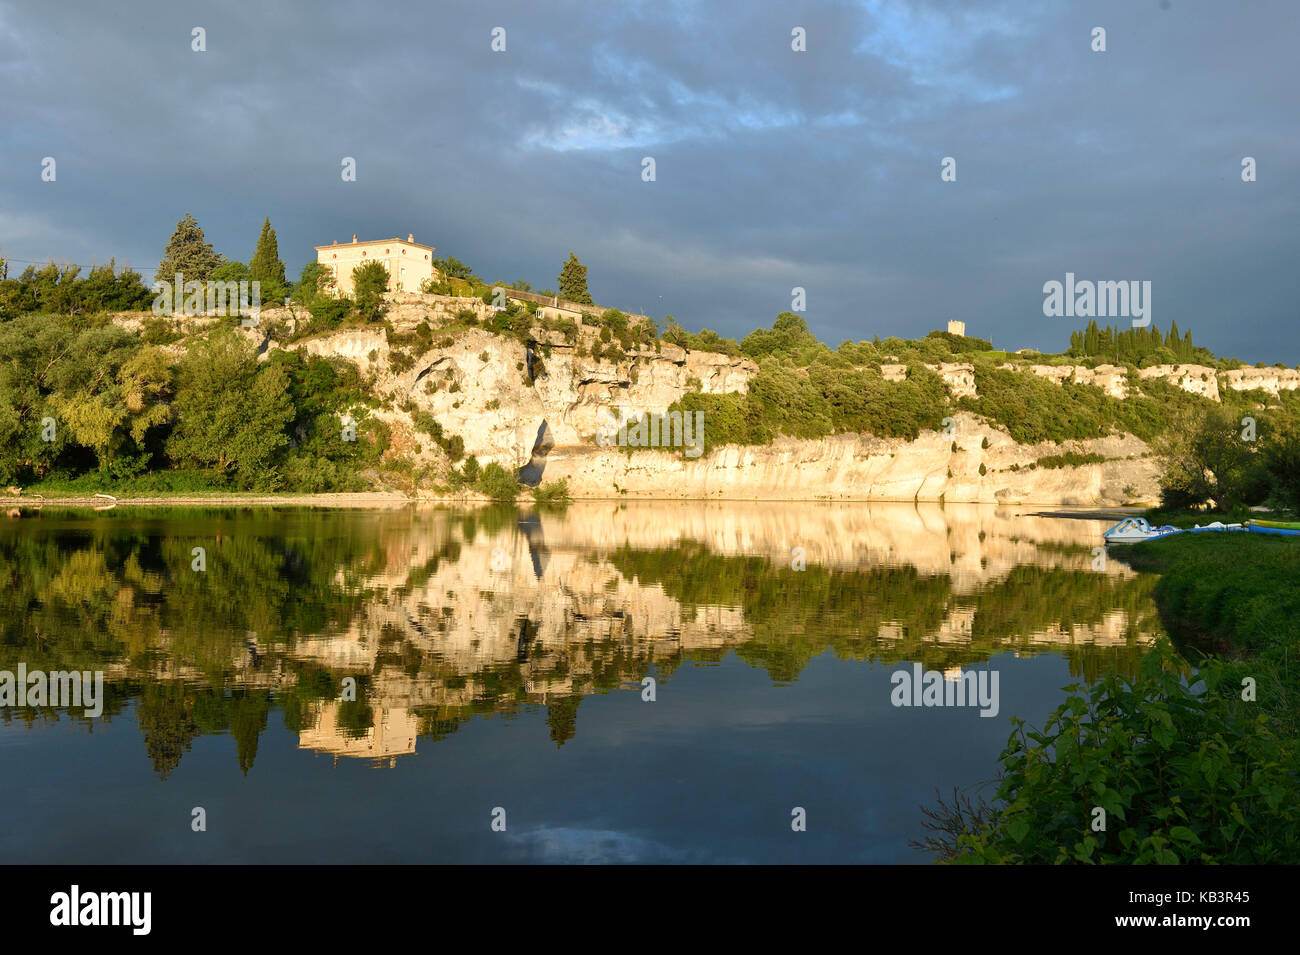 Frankreich, Gard, Rochefort Du Gard, beschriftet Les Plus beaux villages de France (Schönste Dörfer Frankreichs), mittelalterliches Dorf oberhalb des Flusses Ardeche Stockfoto